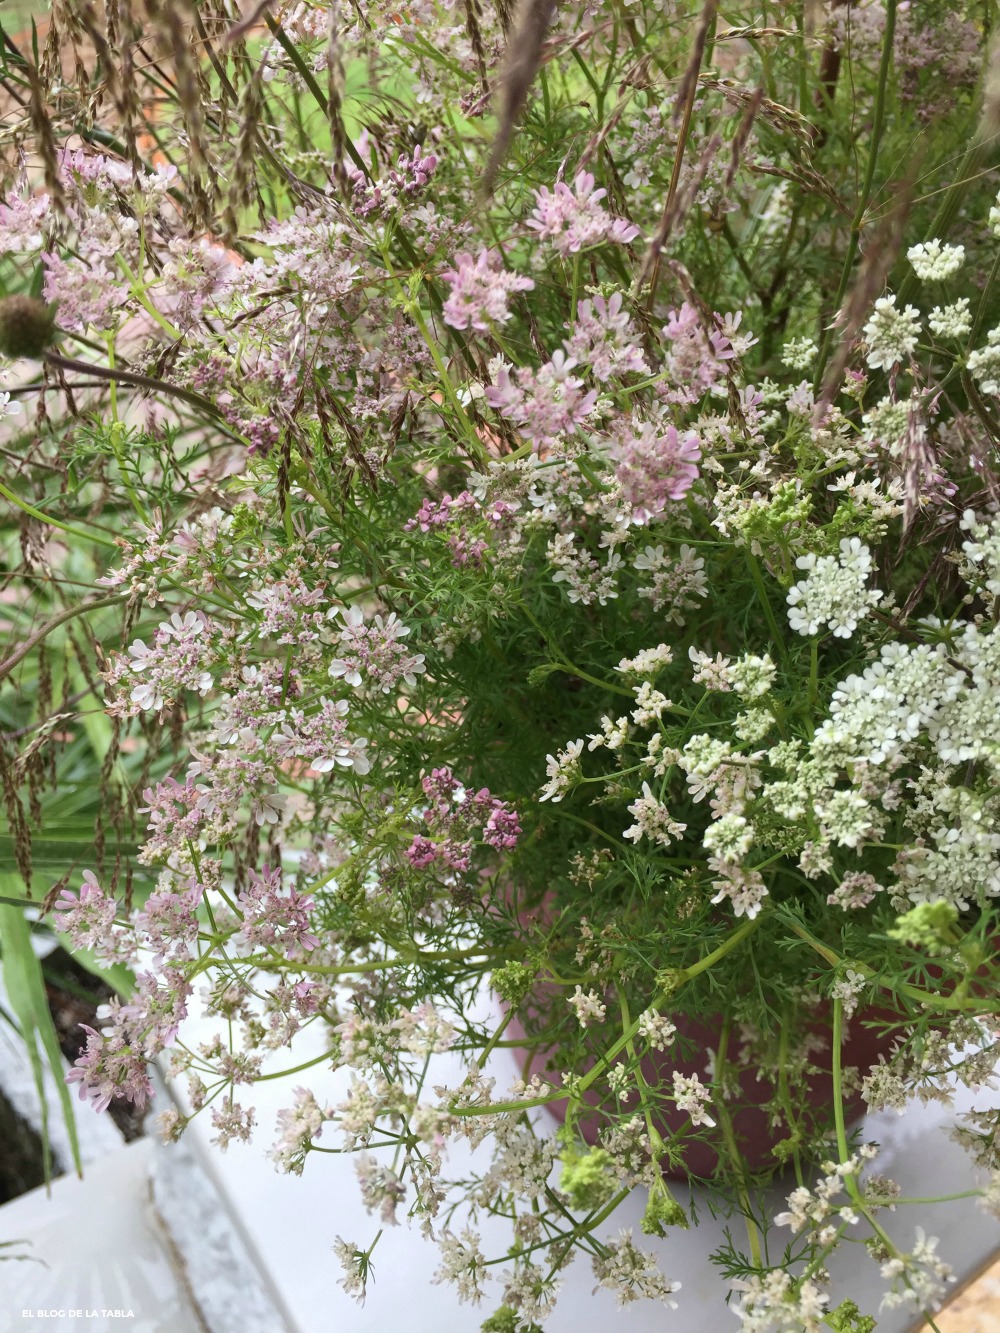 Flores en umbela de color rosa y blanco de la planta aromatica cilantro